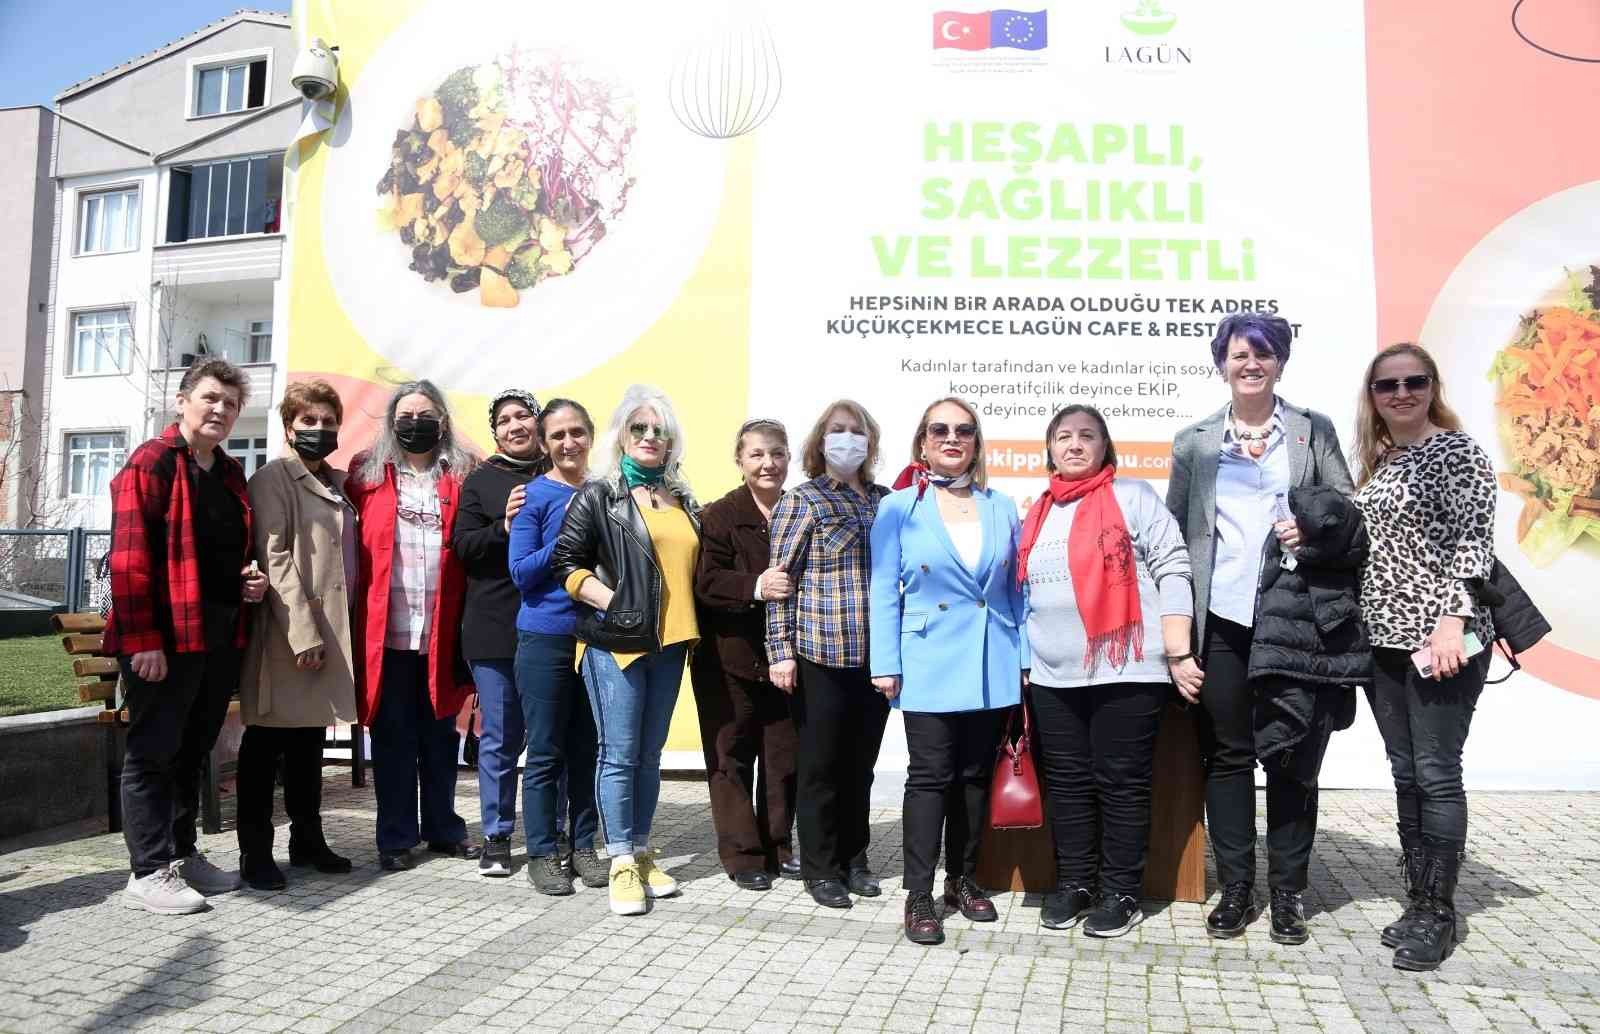 Küçükçekmece’de, hibe desteğiyle açılan kafede Türk vatandaşı ve mülteci kadınlardan oluşan 31 kadın iş sahibi oldu. Kafenin farklı alanlarında ...